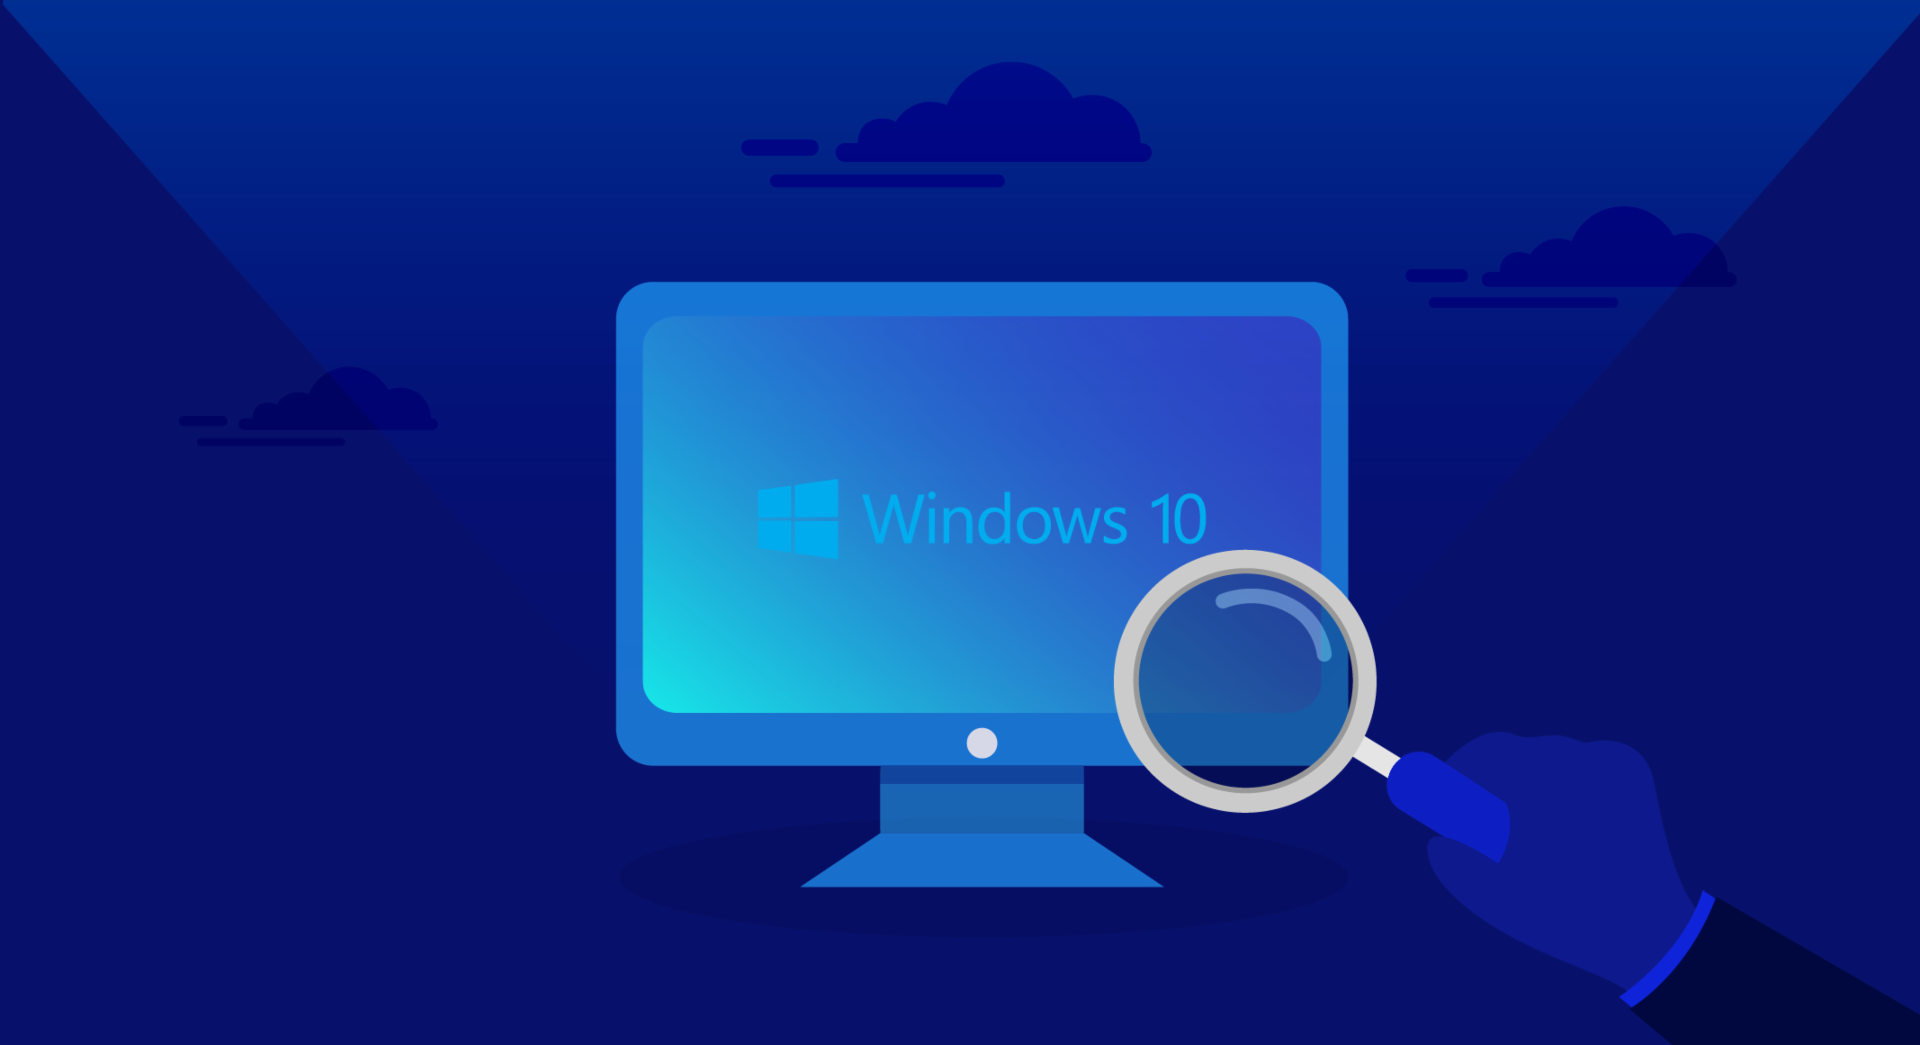 Windows 10 es el sistema operativo de Microsoft para computadores.